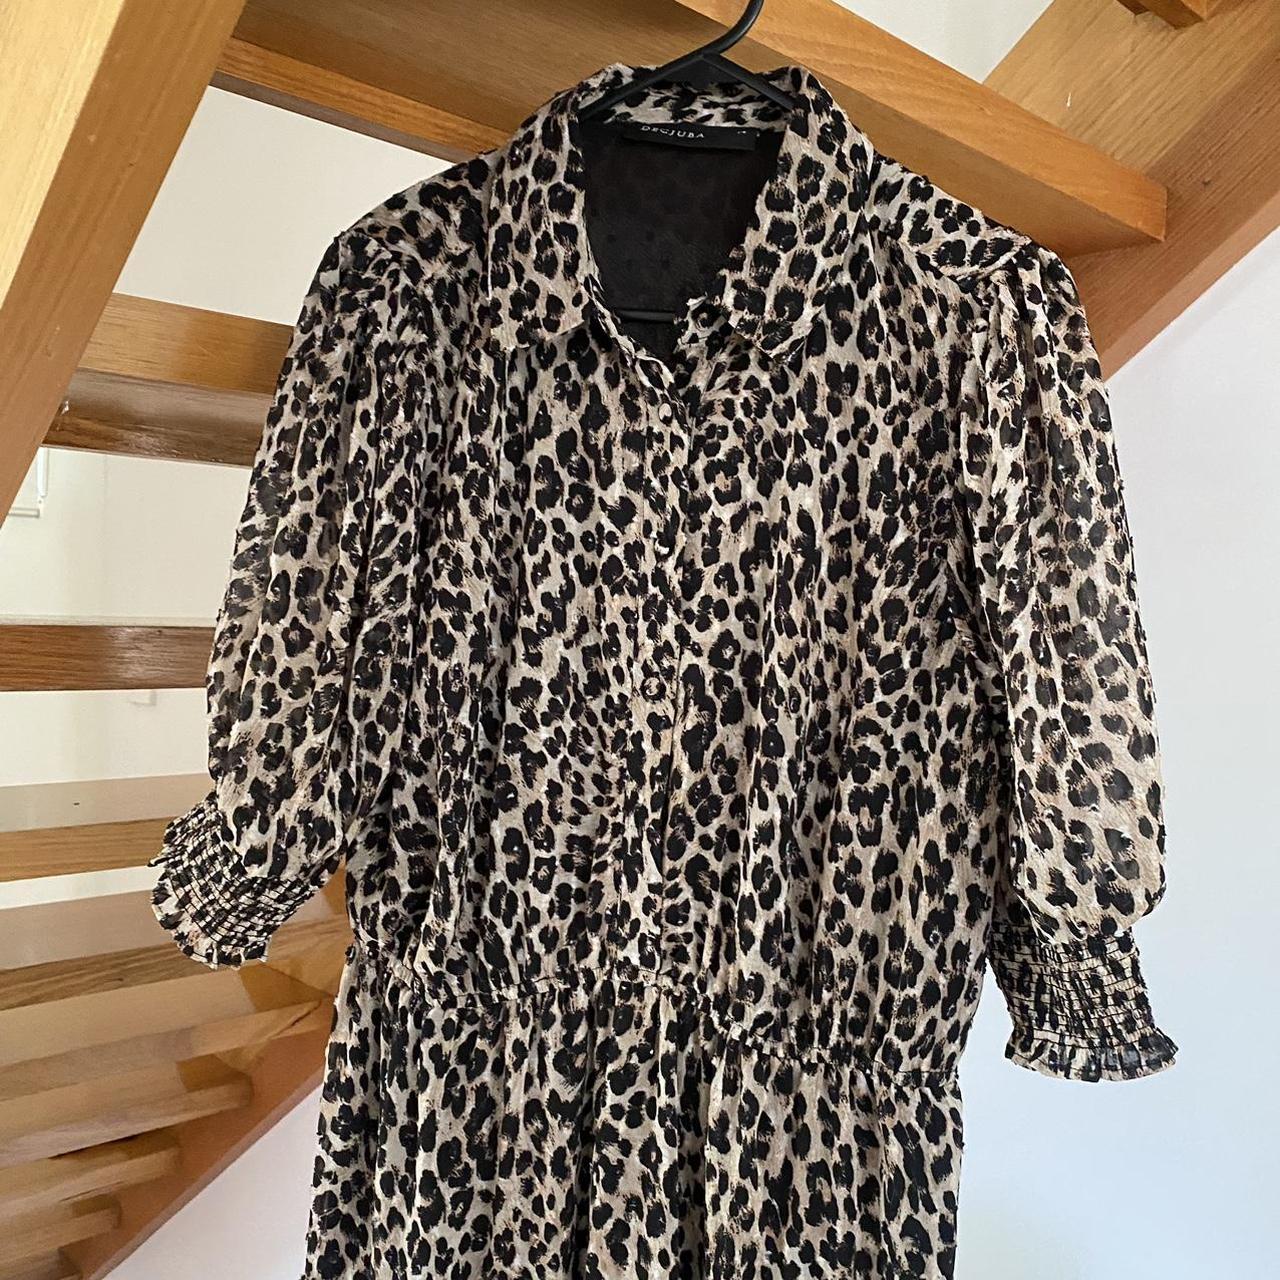 Decjuba leopard / cheetah print maxi dress with puff... - Depop